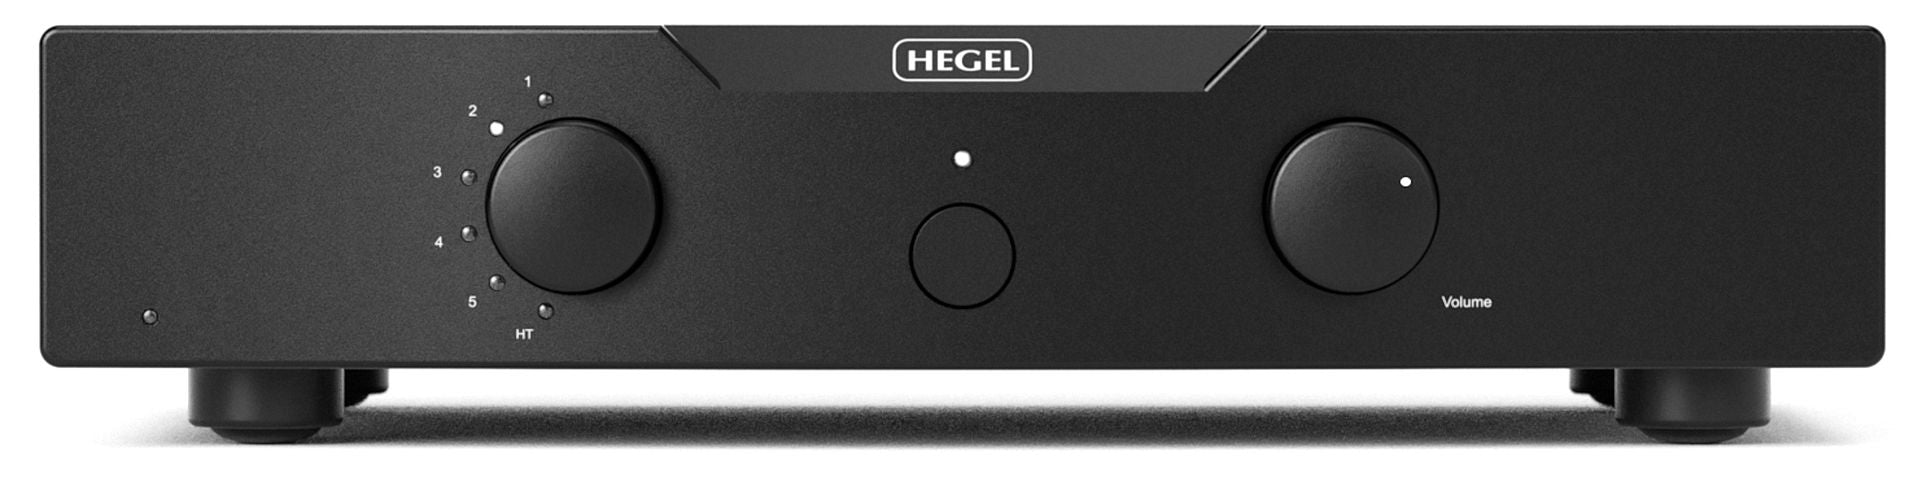 hegel p30a pre amplifier